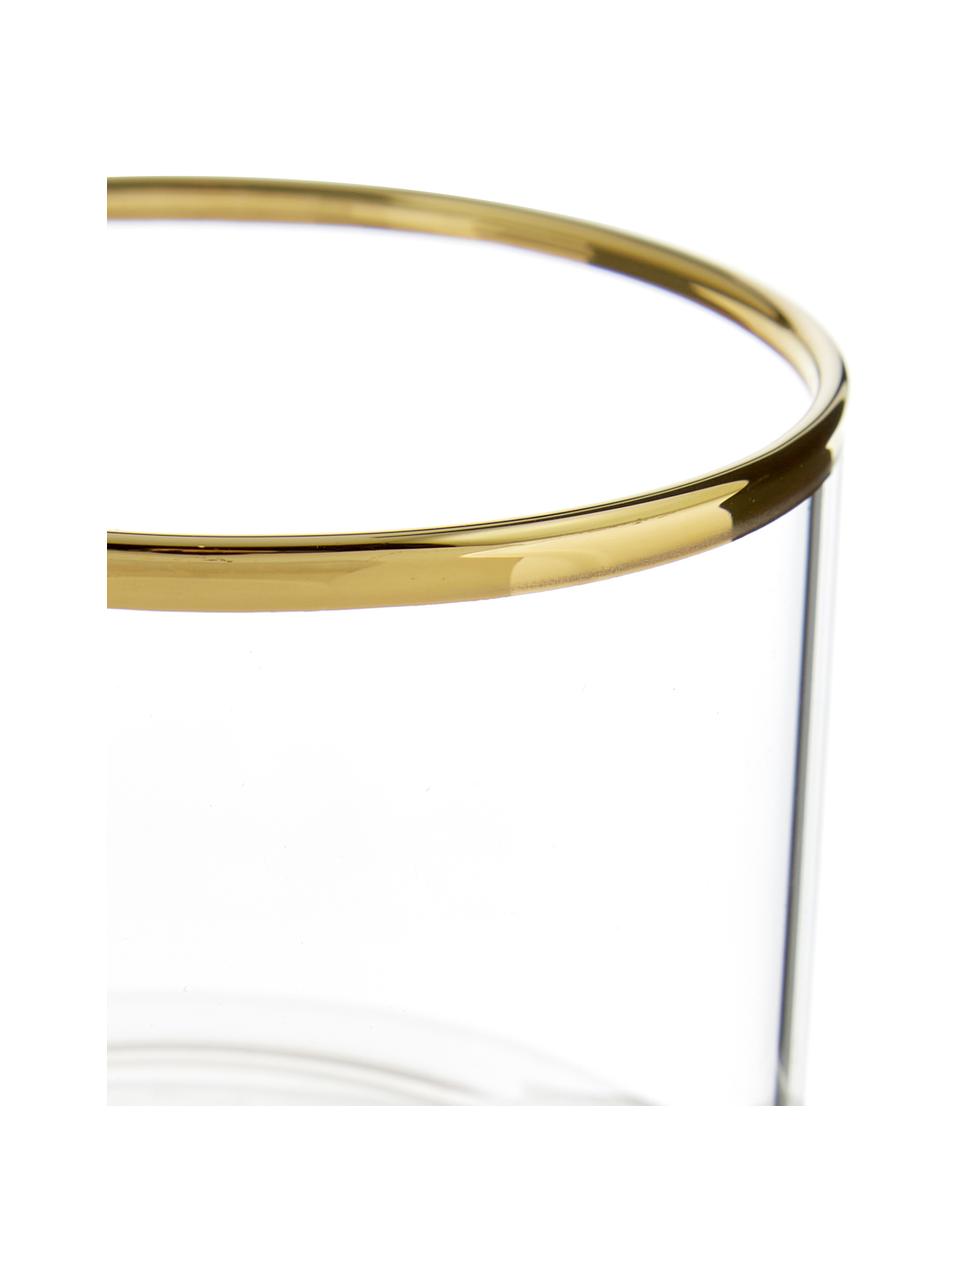 Szklanka ze szkła borokrzemowego Boro, 6 szt., Szkło borokrzemowe, Transparentny, odcienie złotego, Ø 8 x W 6 cm